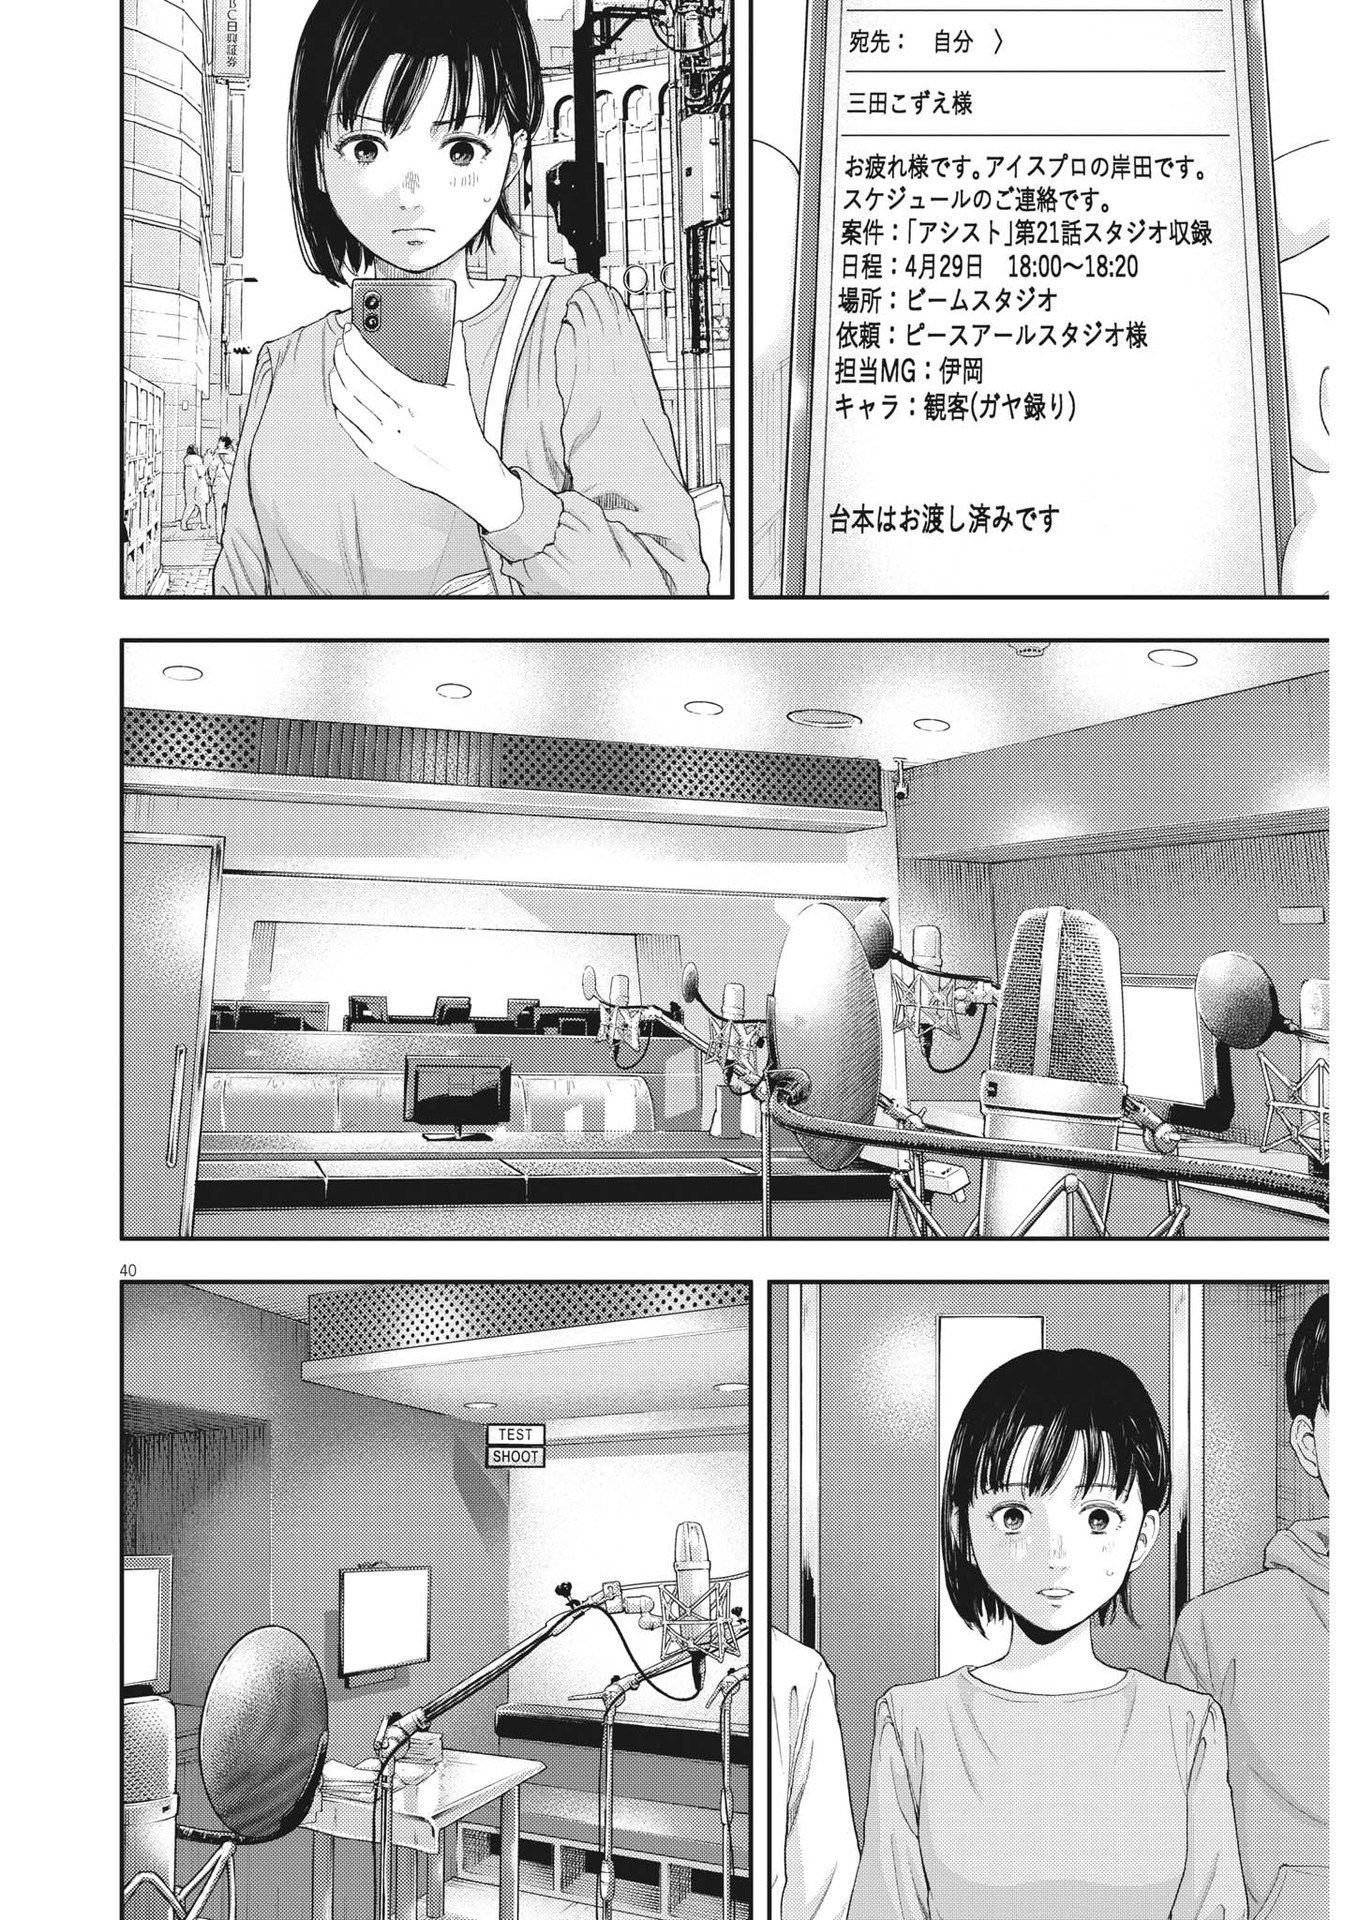 Yumenashi-sensei no Shinroshidou - Chapter 1 - Page 40